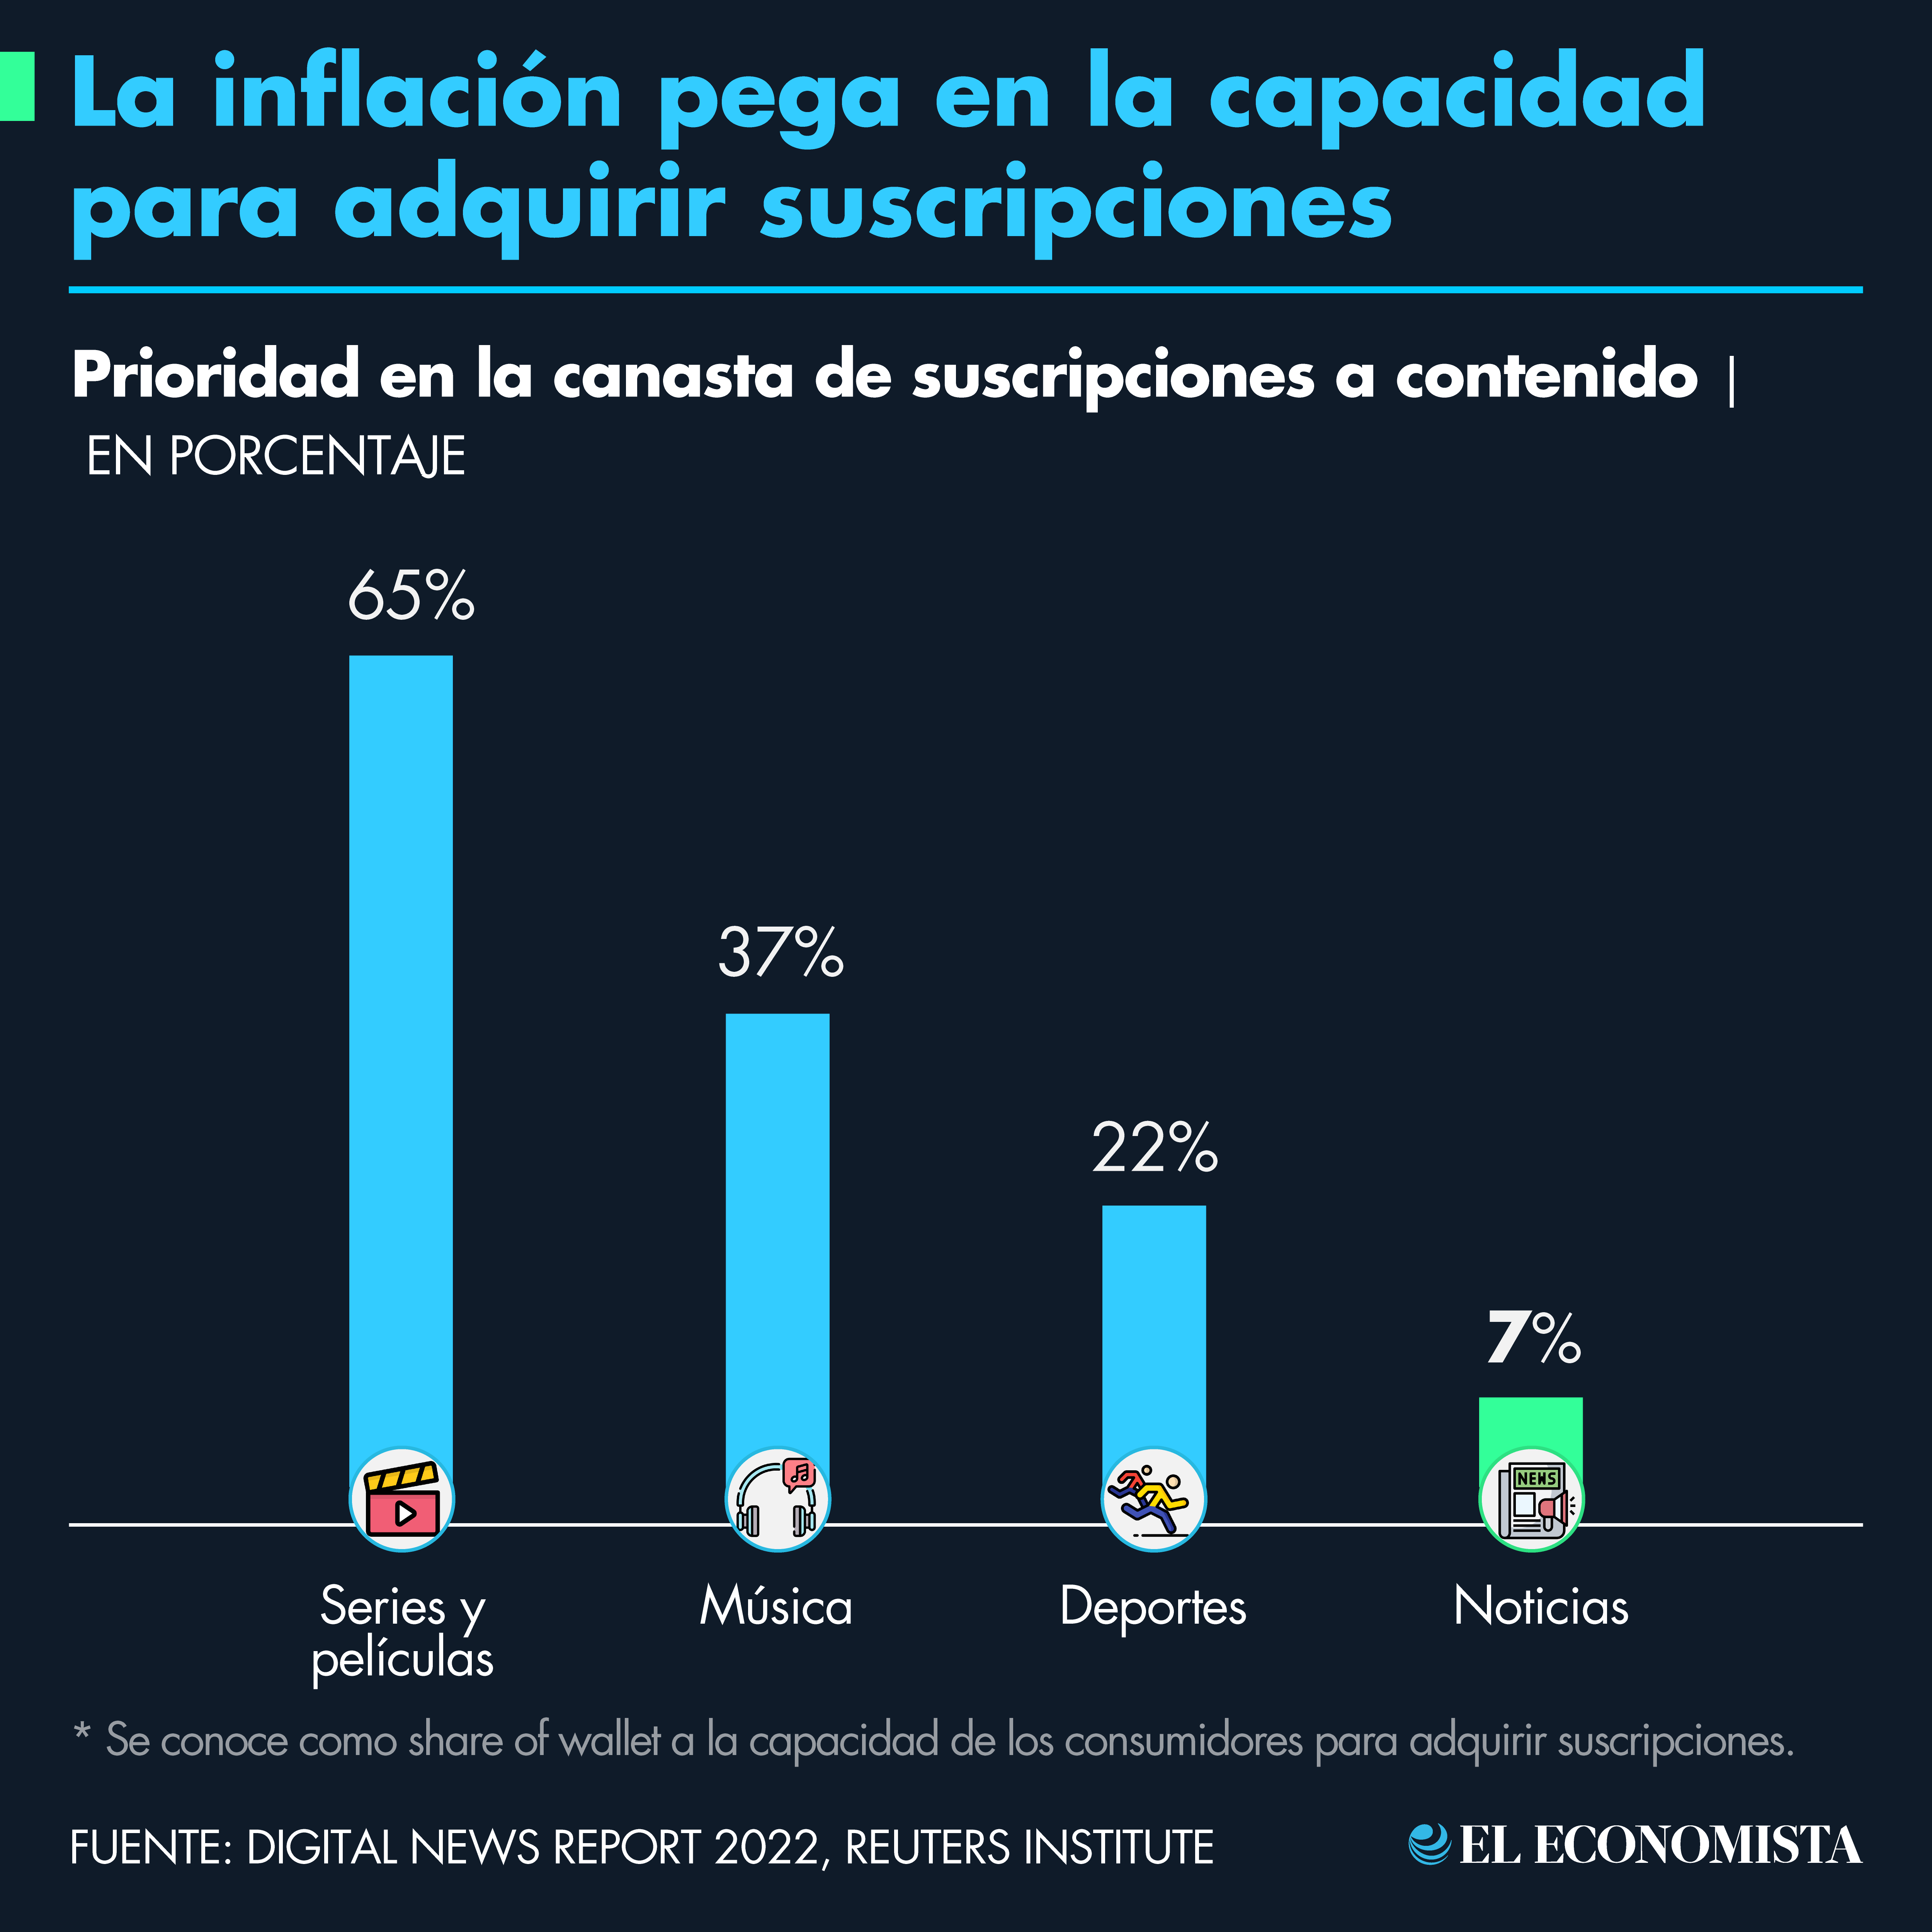 La inflación pega en la capacidad para adquirir suscripciones. Fuente: Digital News Report 2022, Reuters Institute